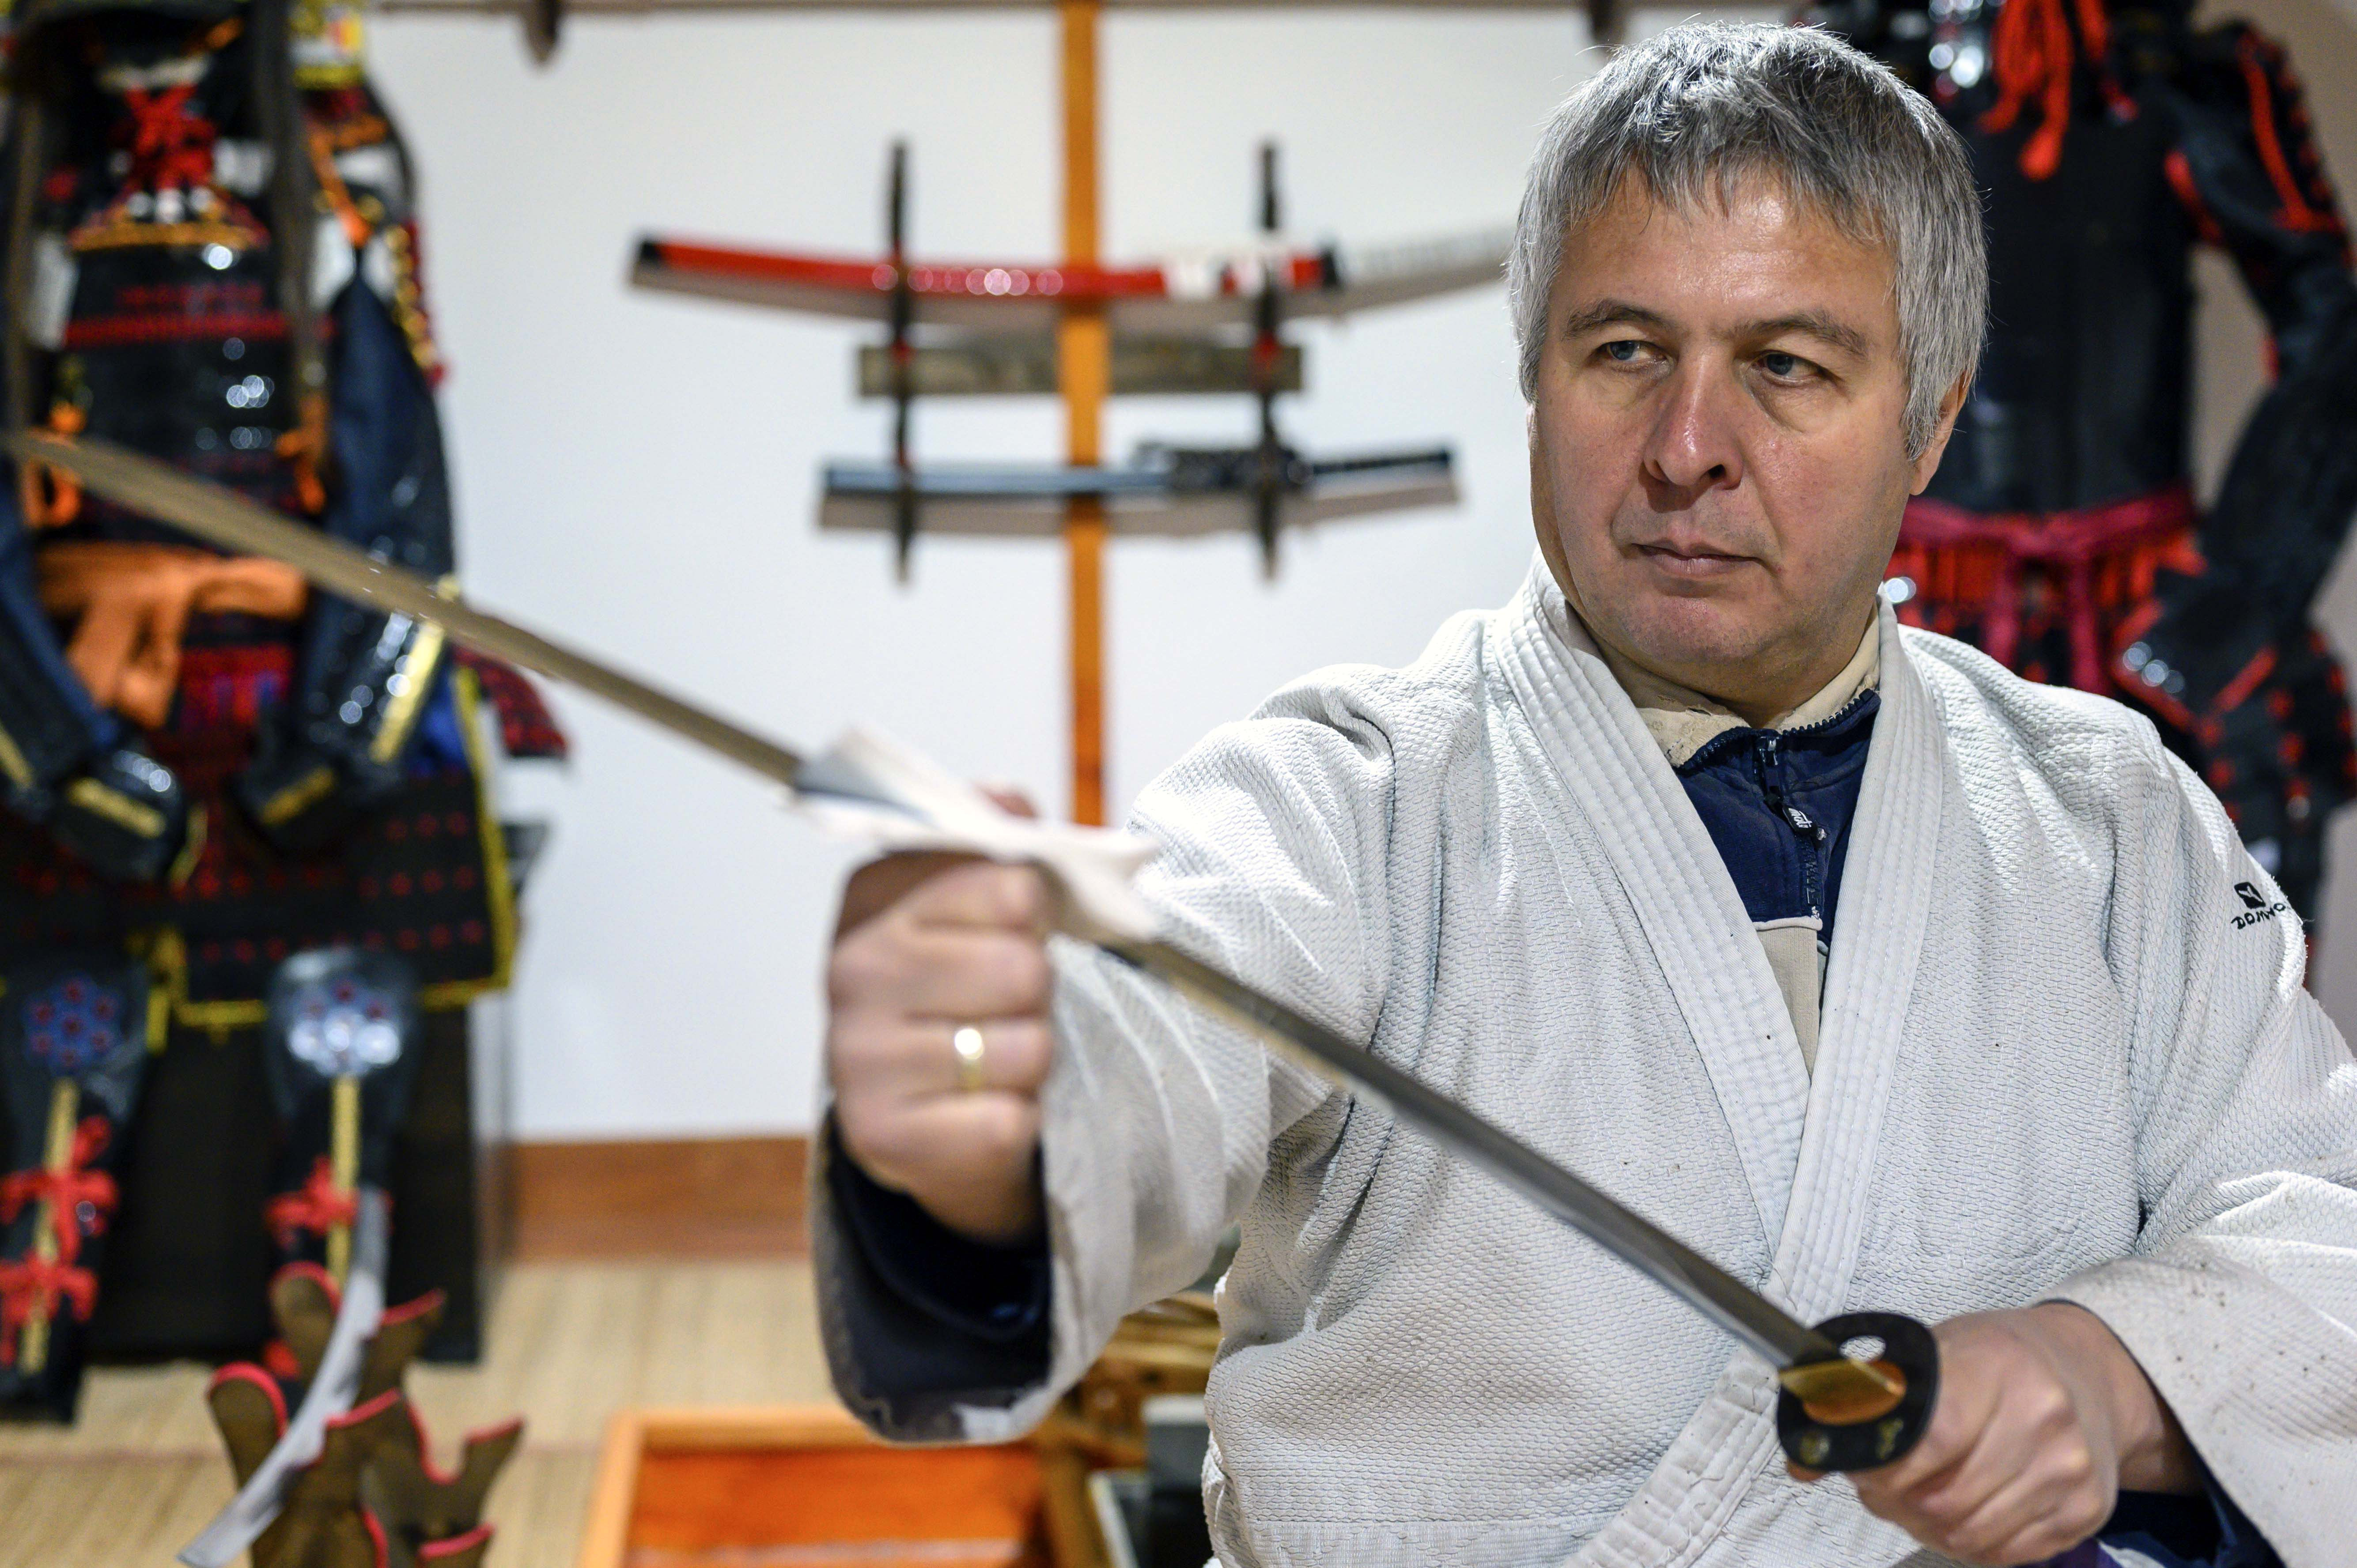 Magyar kardkovács csodájára járnak a japán turisták - Blikk